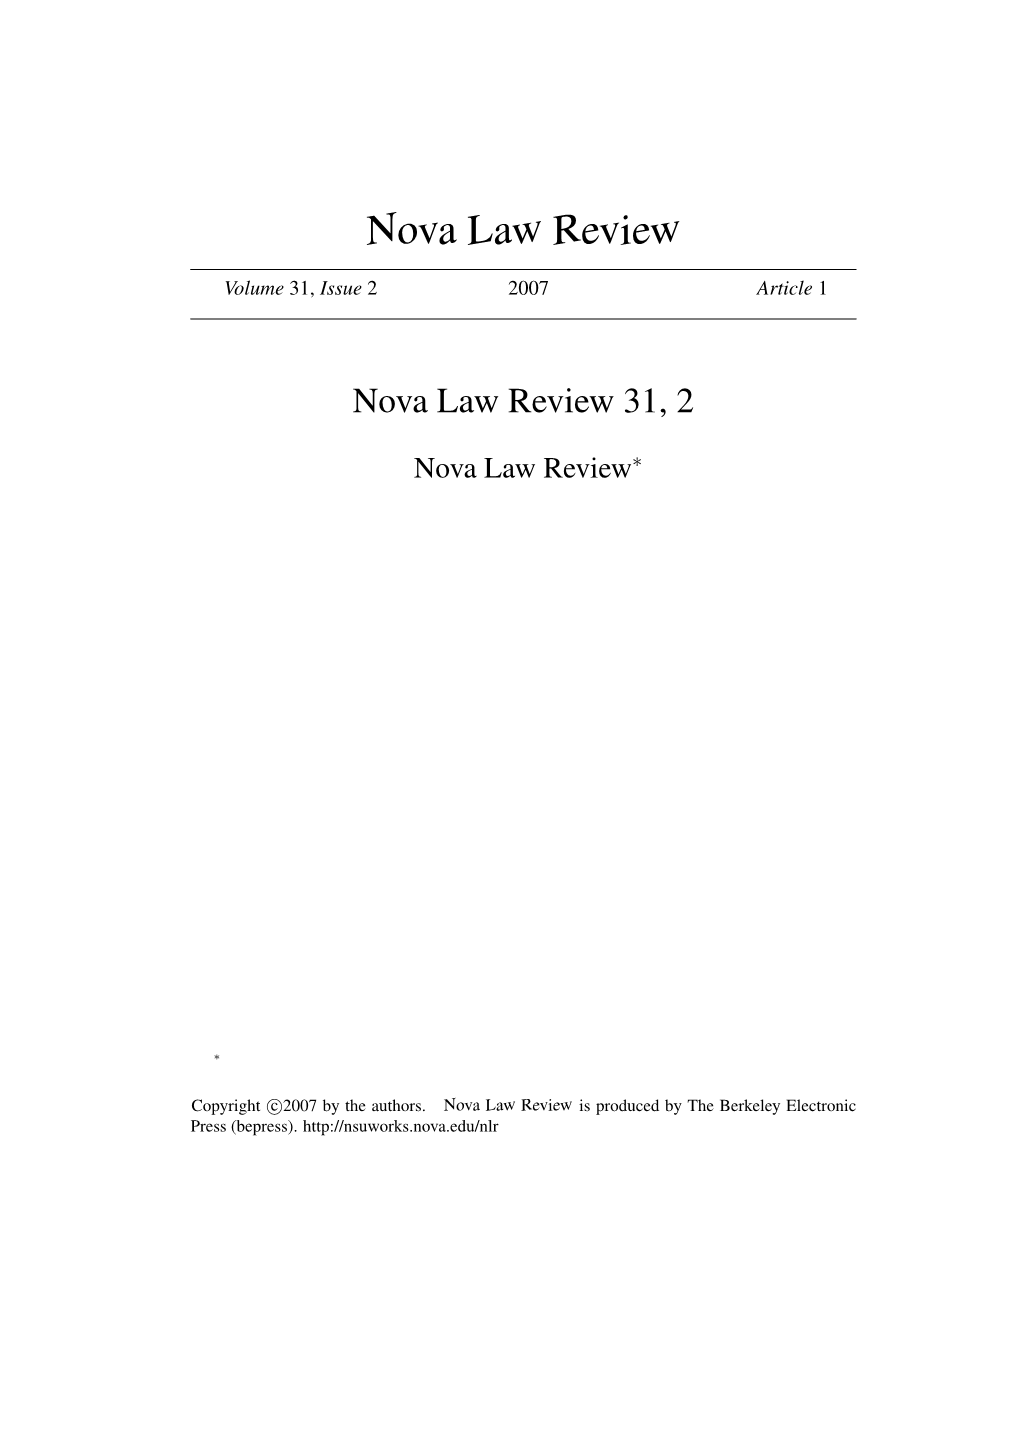 Nova Law Review 31, 2